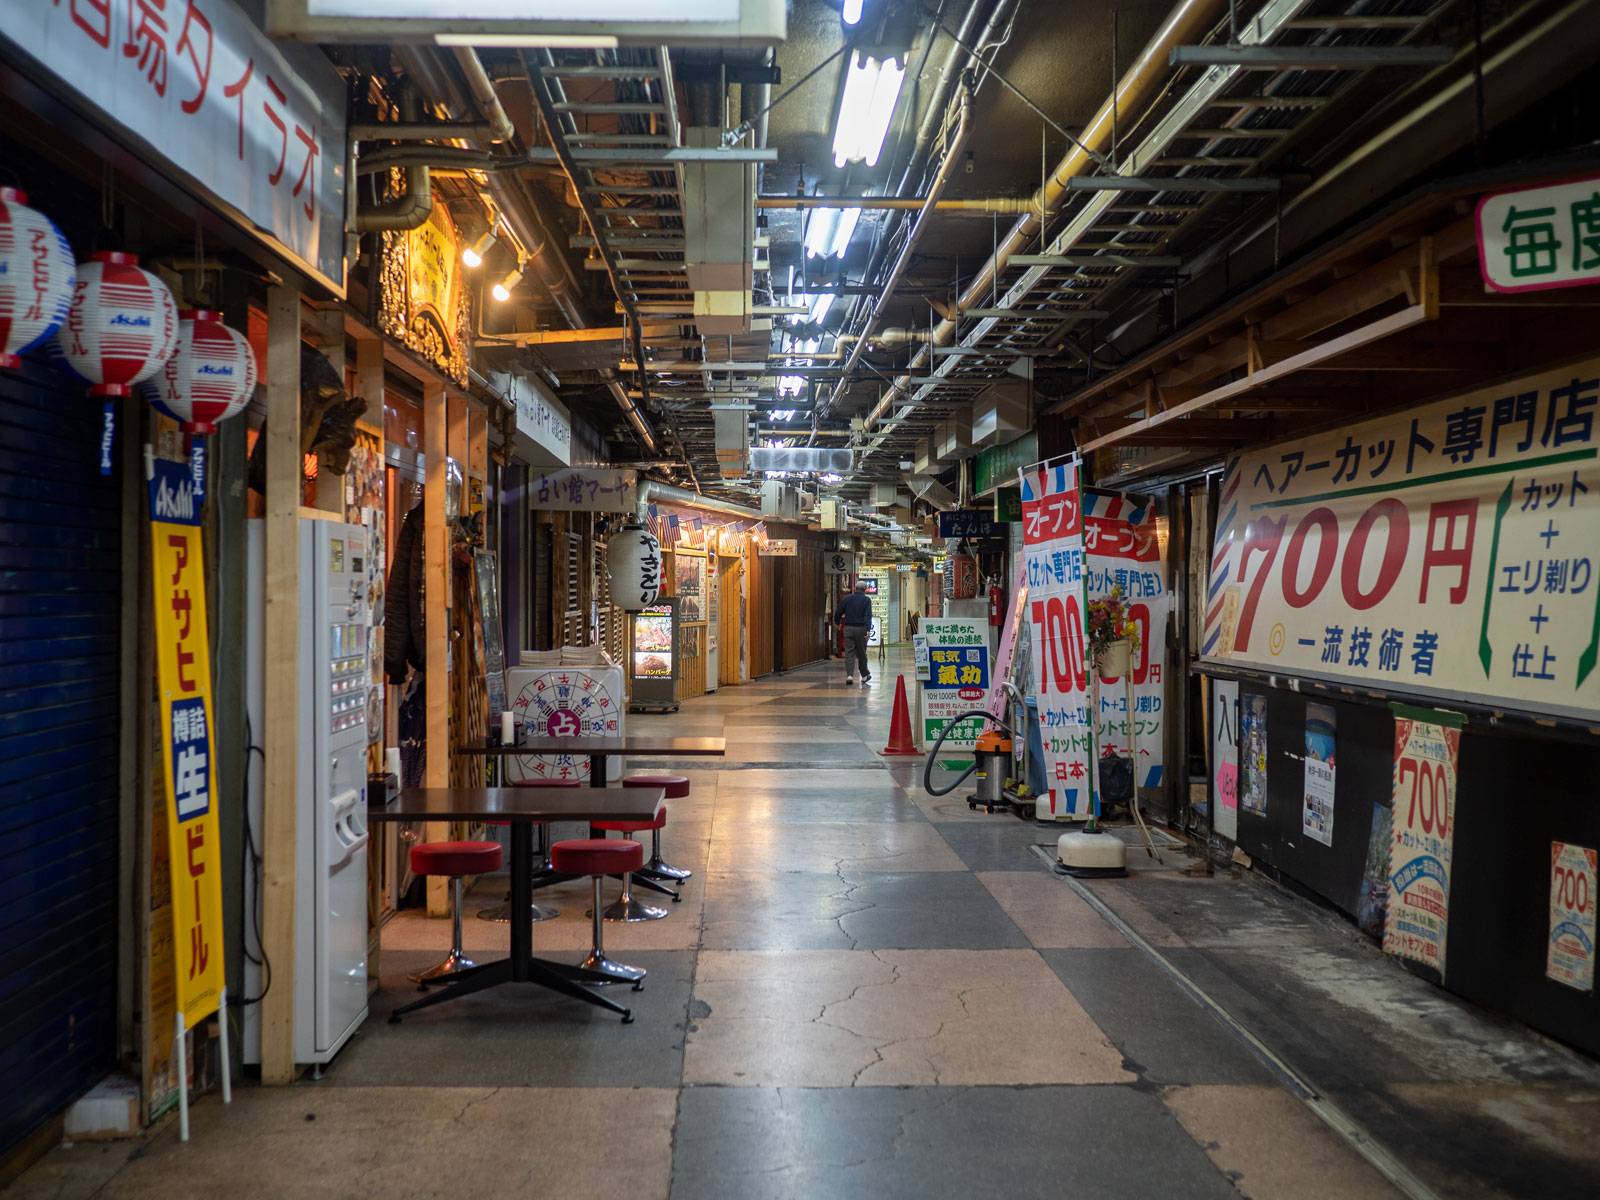 Old underground shopping alley